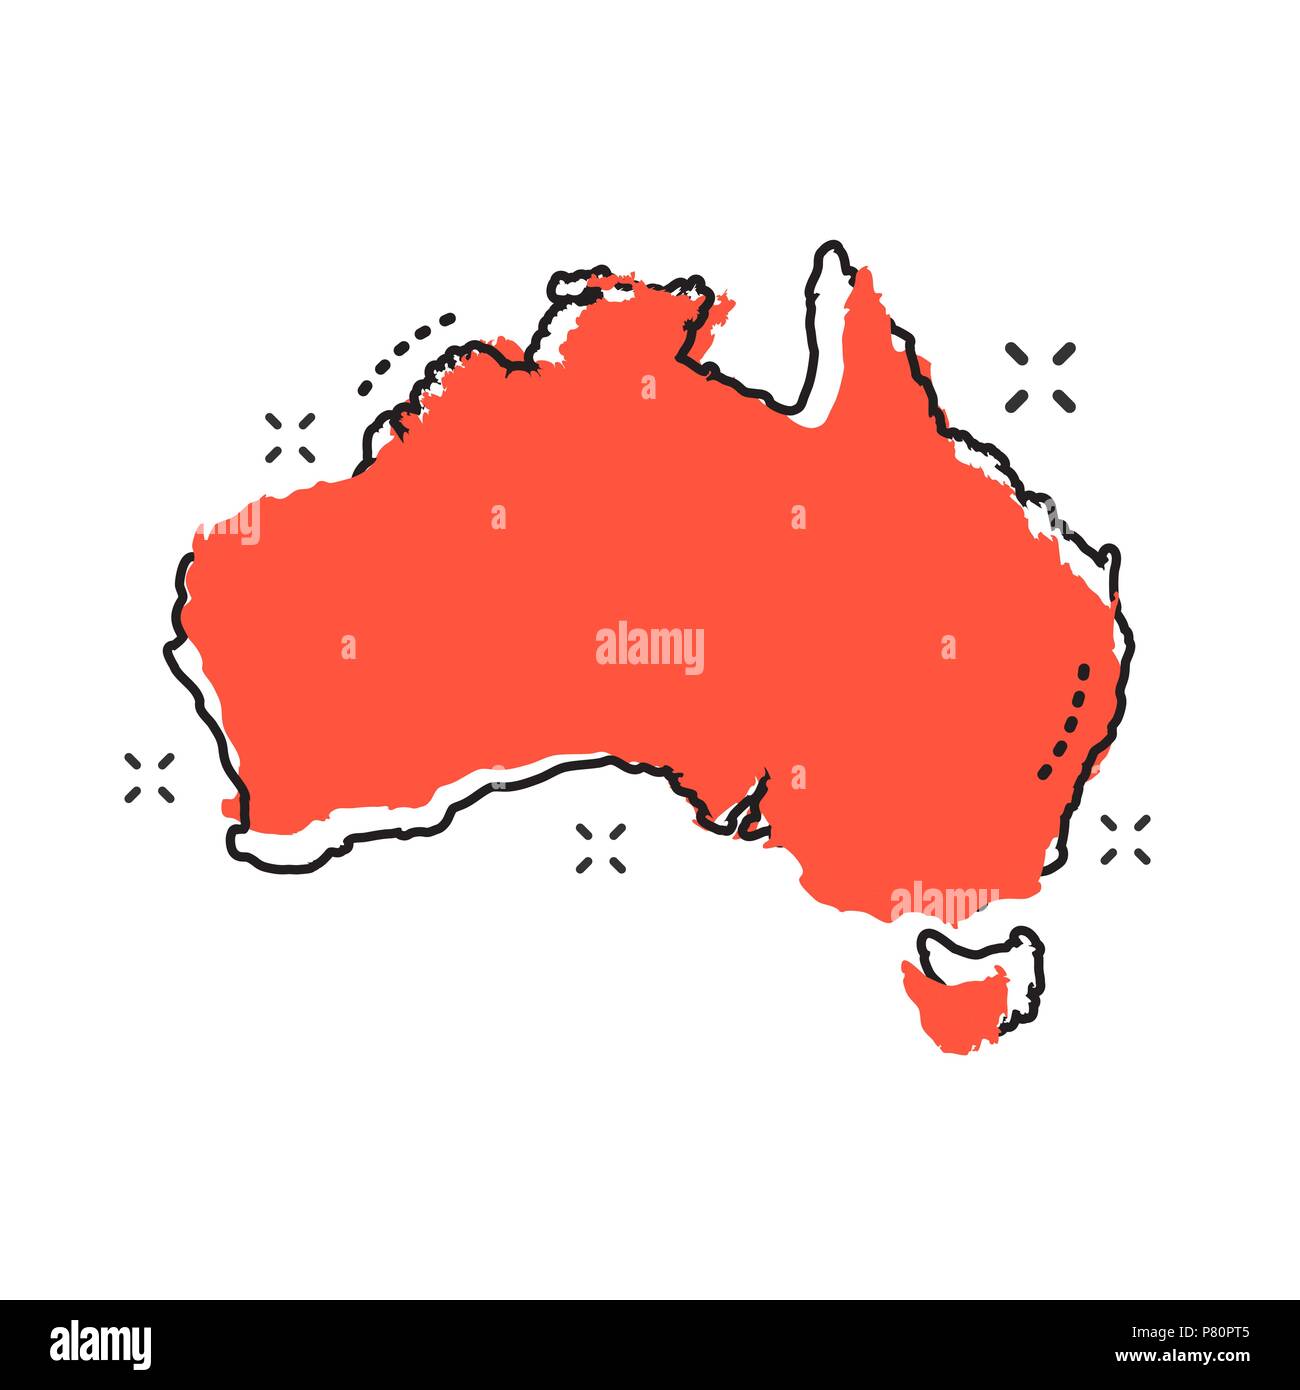 Cartoon Australien Karte Symbol im Comic-stil. Australien Abbildung Piktogramm. Land Geographie Zeichen splash Geschäftskonzept. Stock Vektor